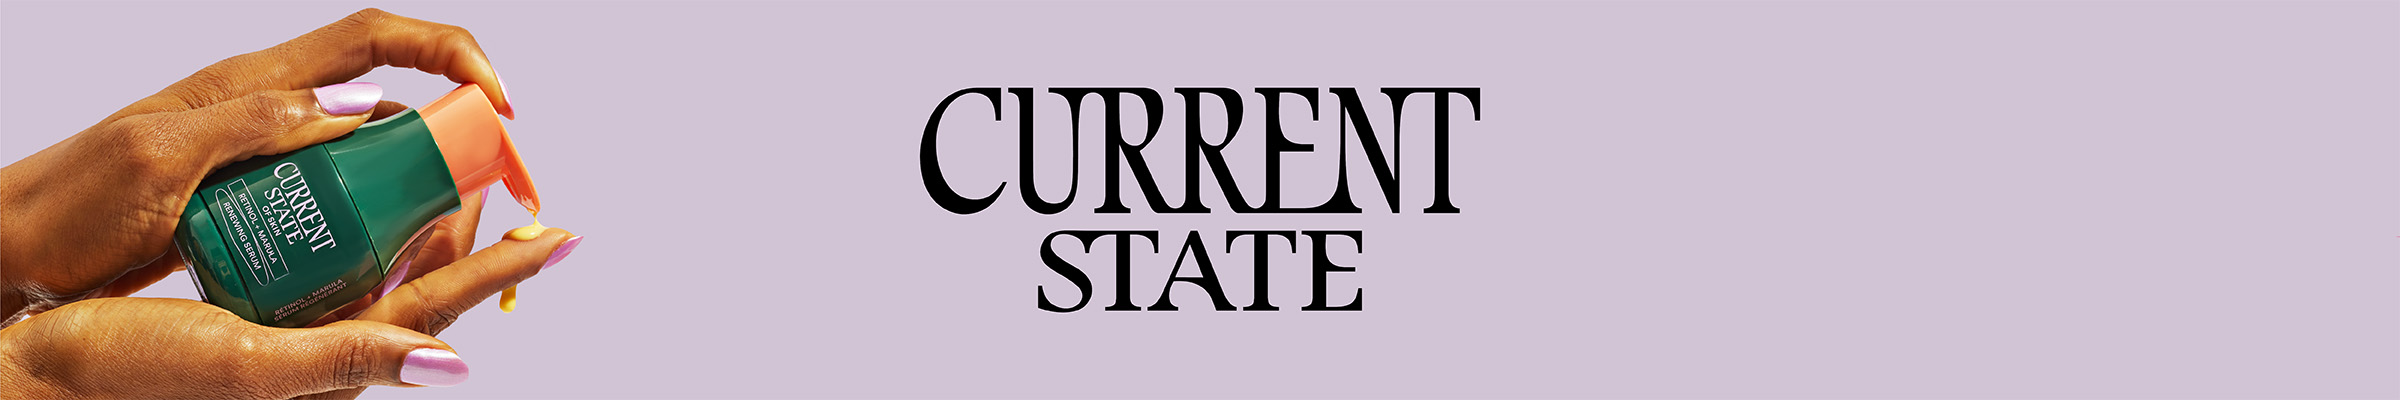 currentstate-banner